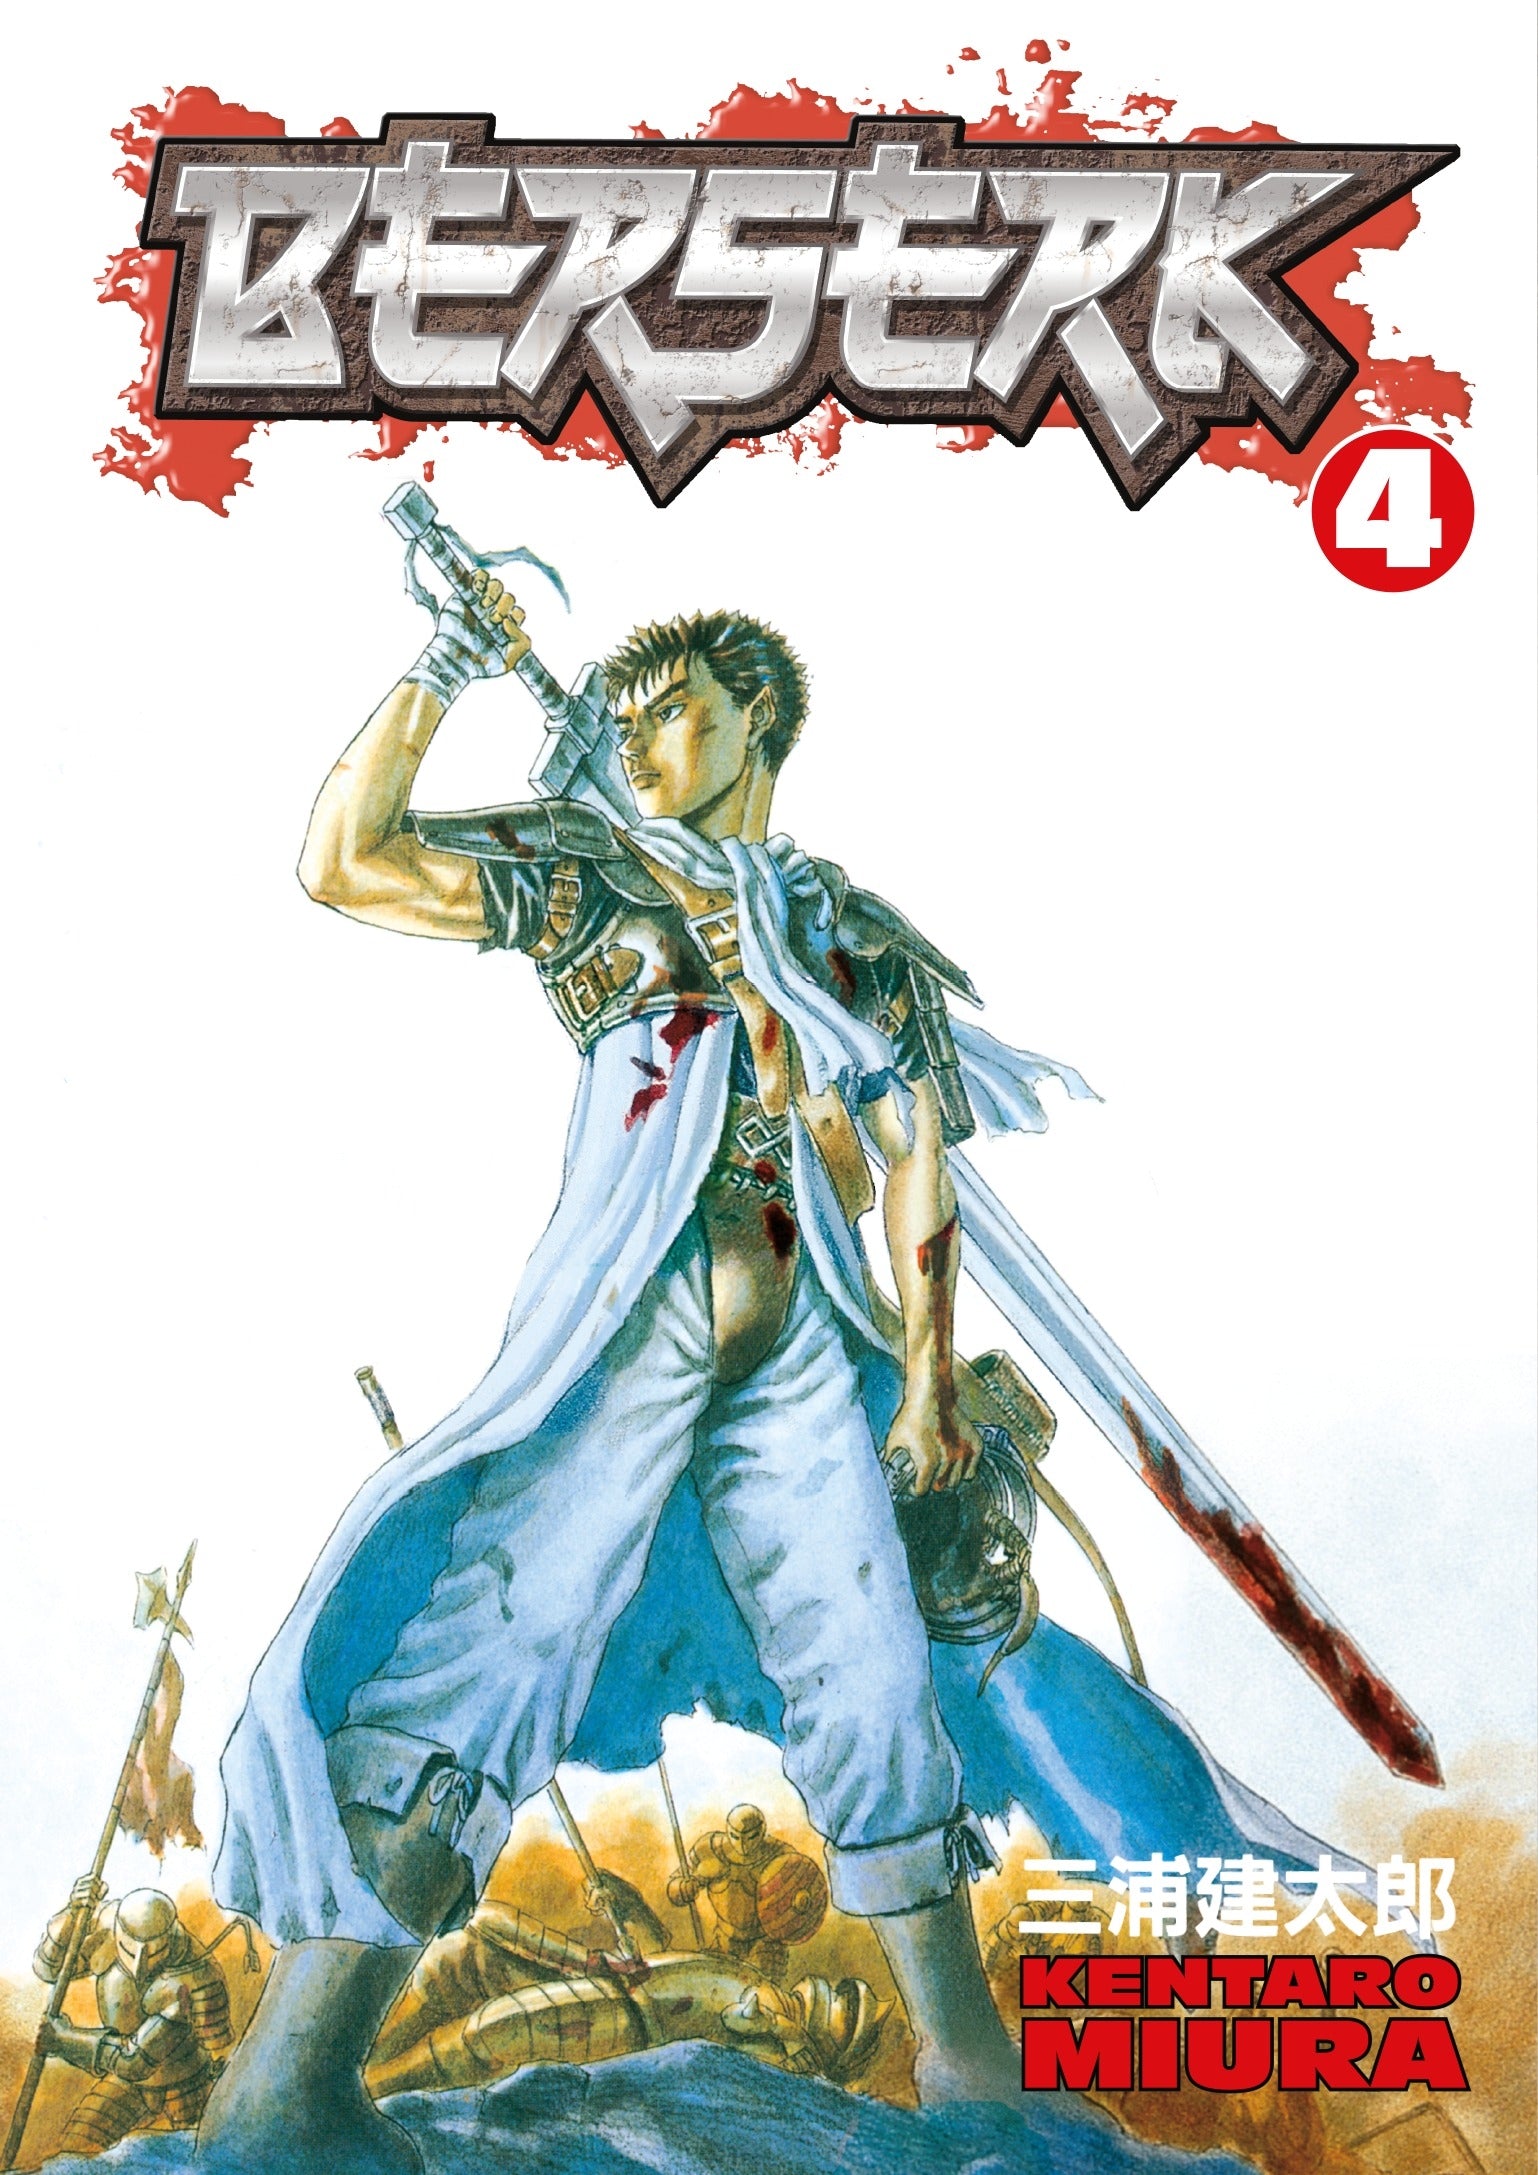 Berserk Vol. 4 (Manga)